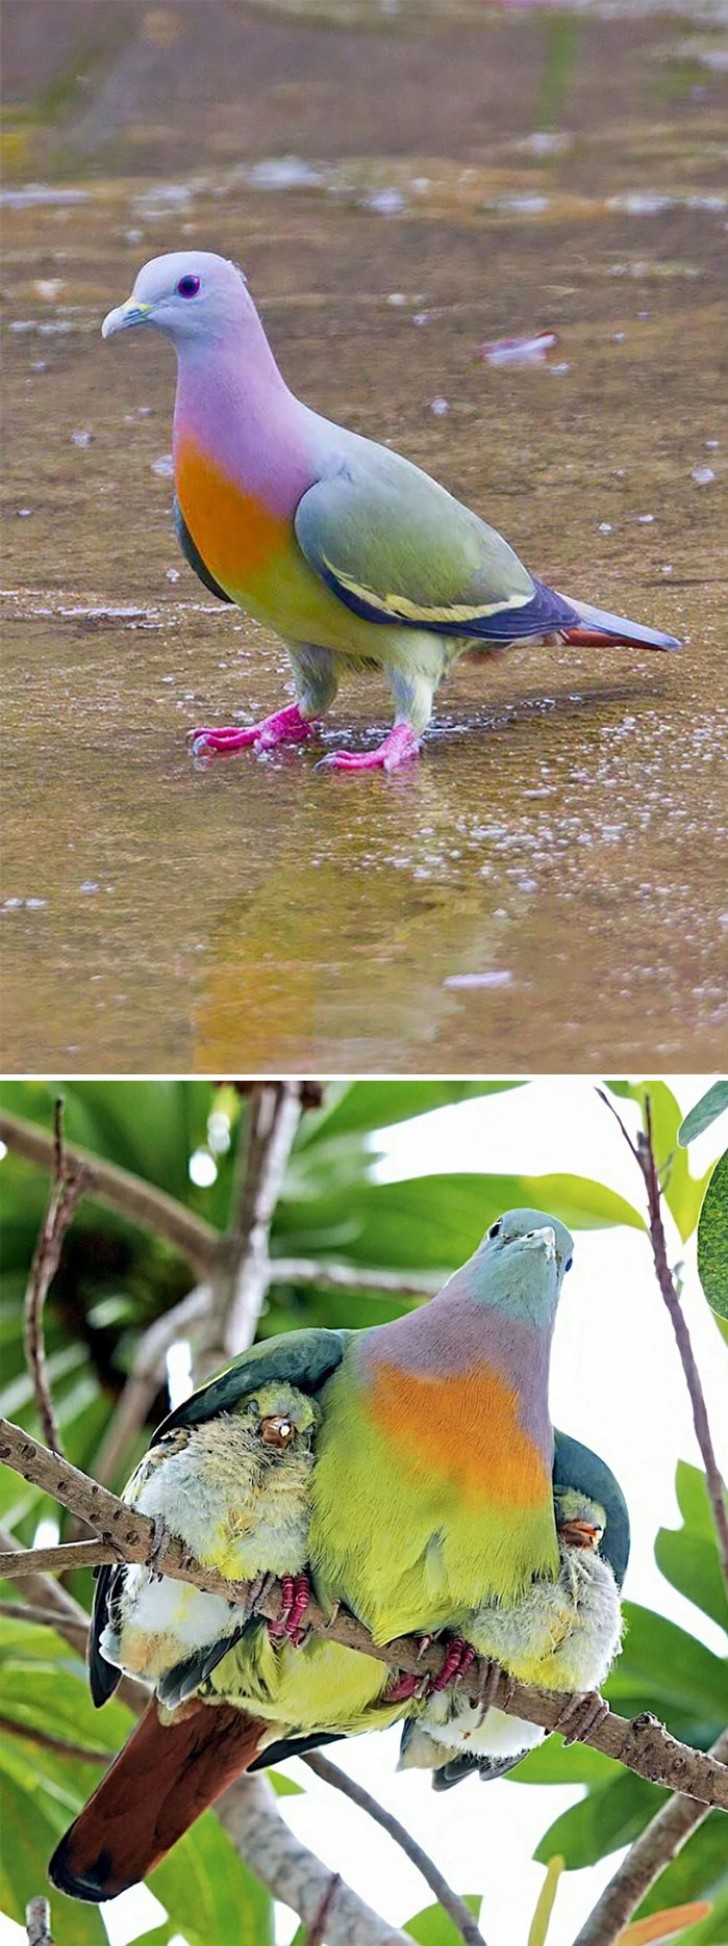 1. Il piccione verde collorosa (Treron vernans) è una specie multicolore diffusa nel Sud-est Asiatico e nelle Filippine